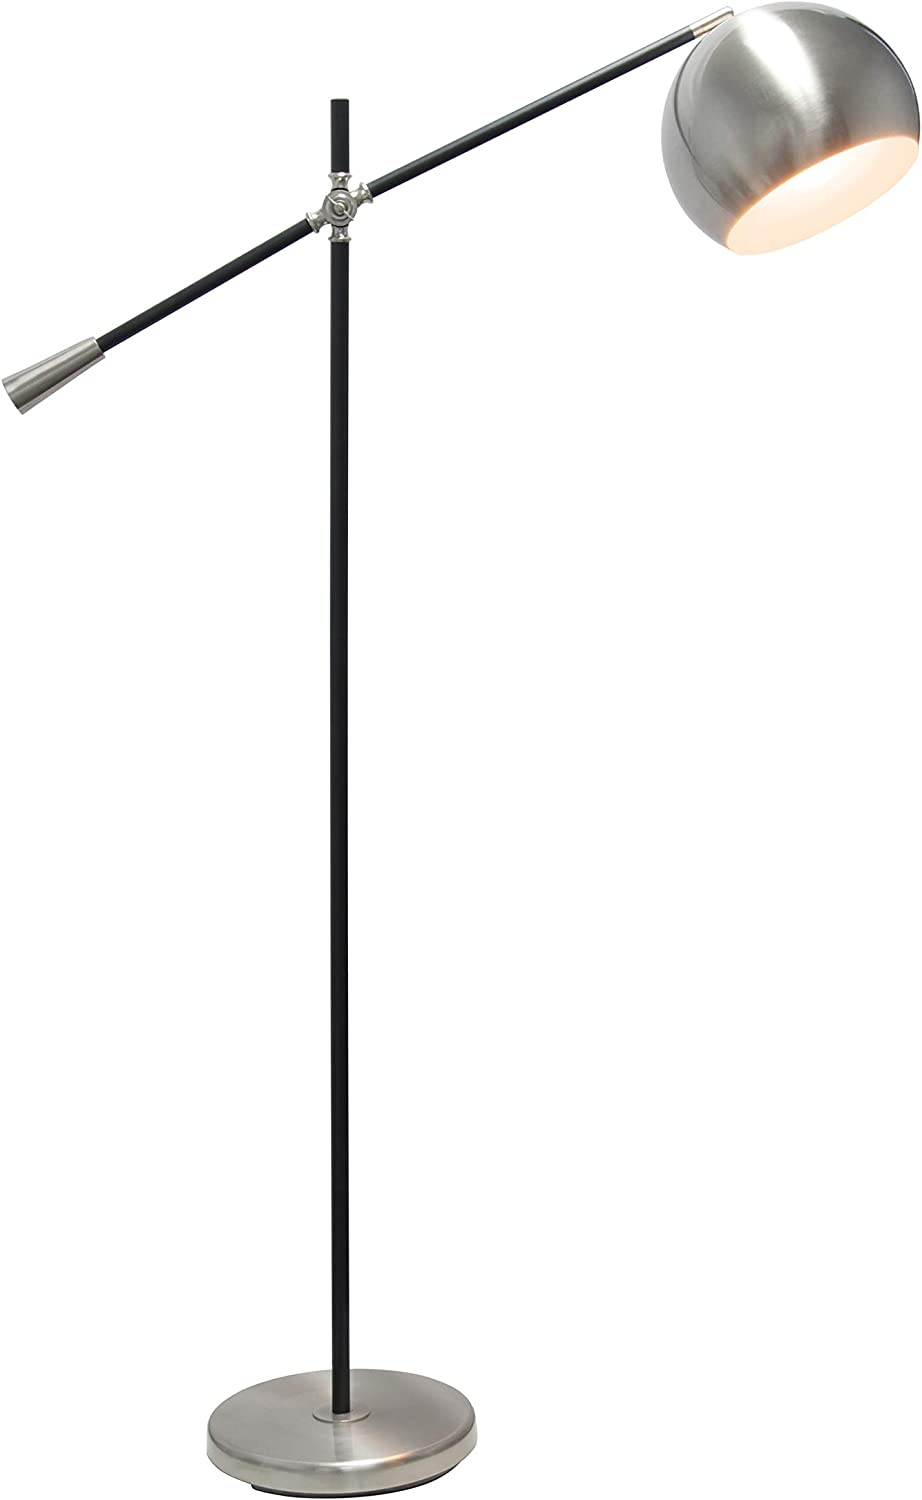 Simple Designs LF1024-BSN Pivot Arm Floor Lamp, Brushed Nickel